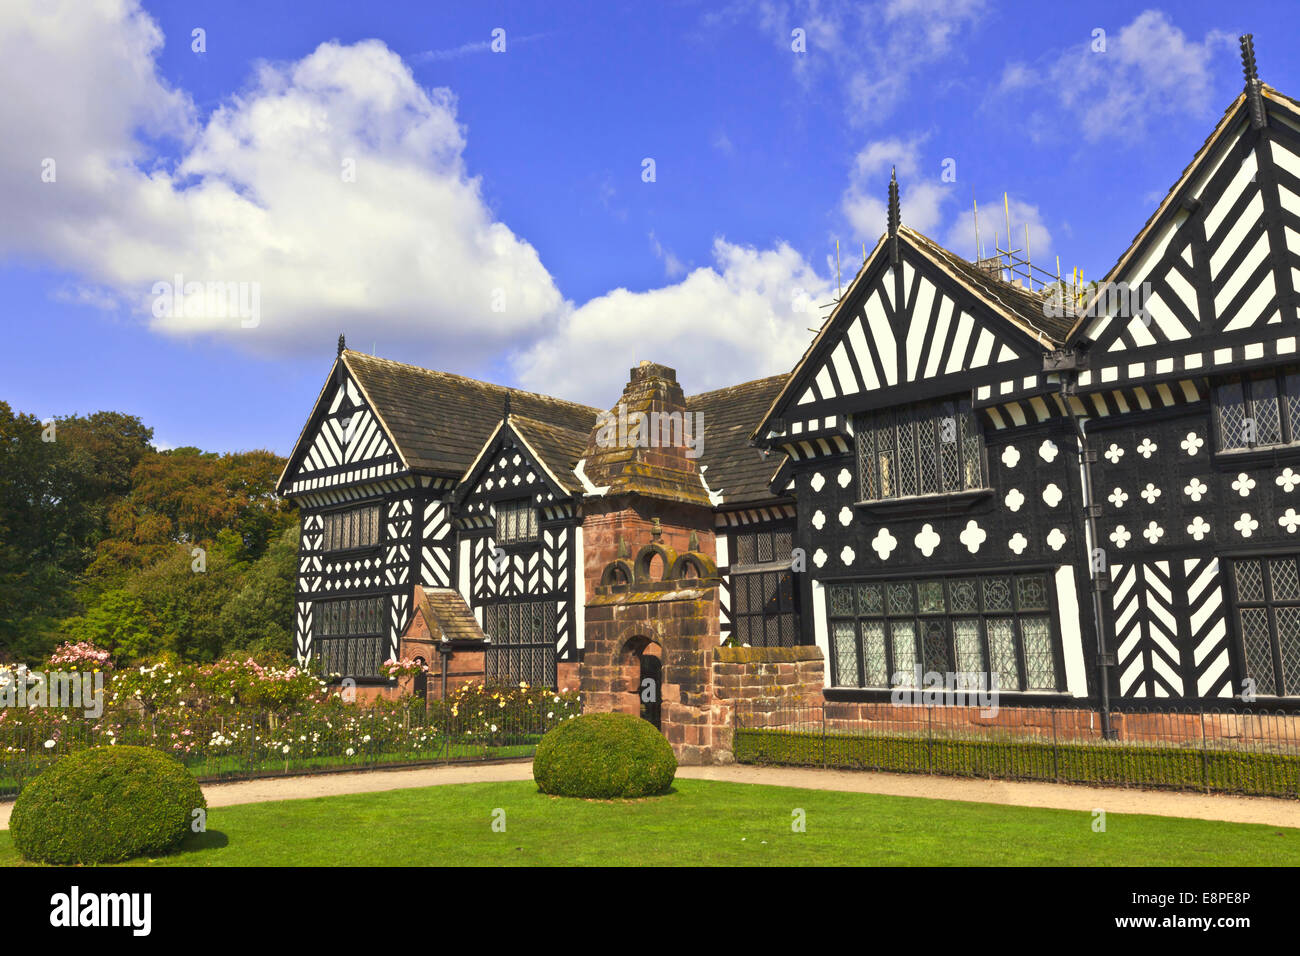 Blanco y negro mansión medieval de entramado de madera y jardines. Foto de stock